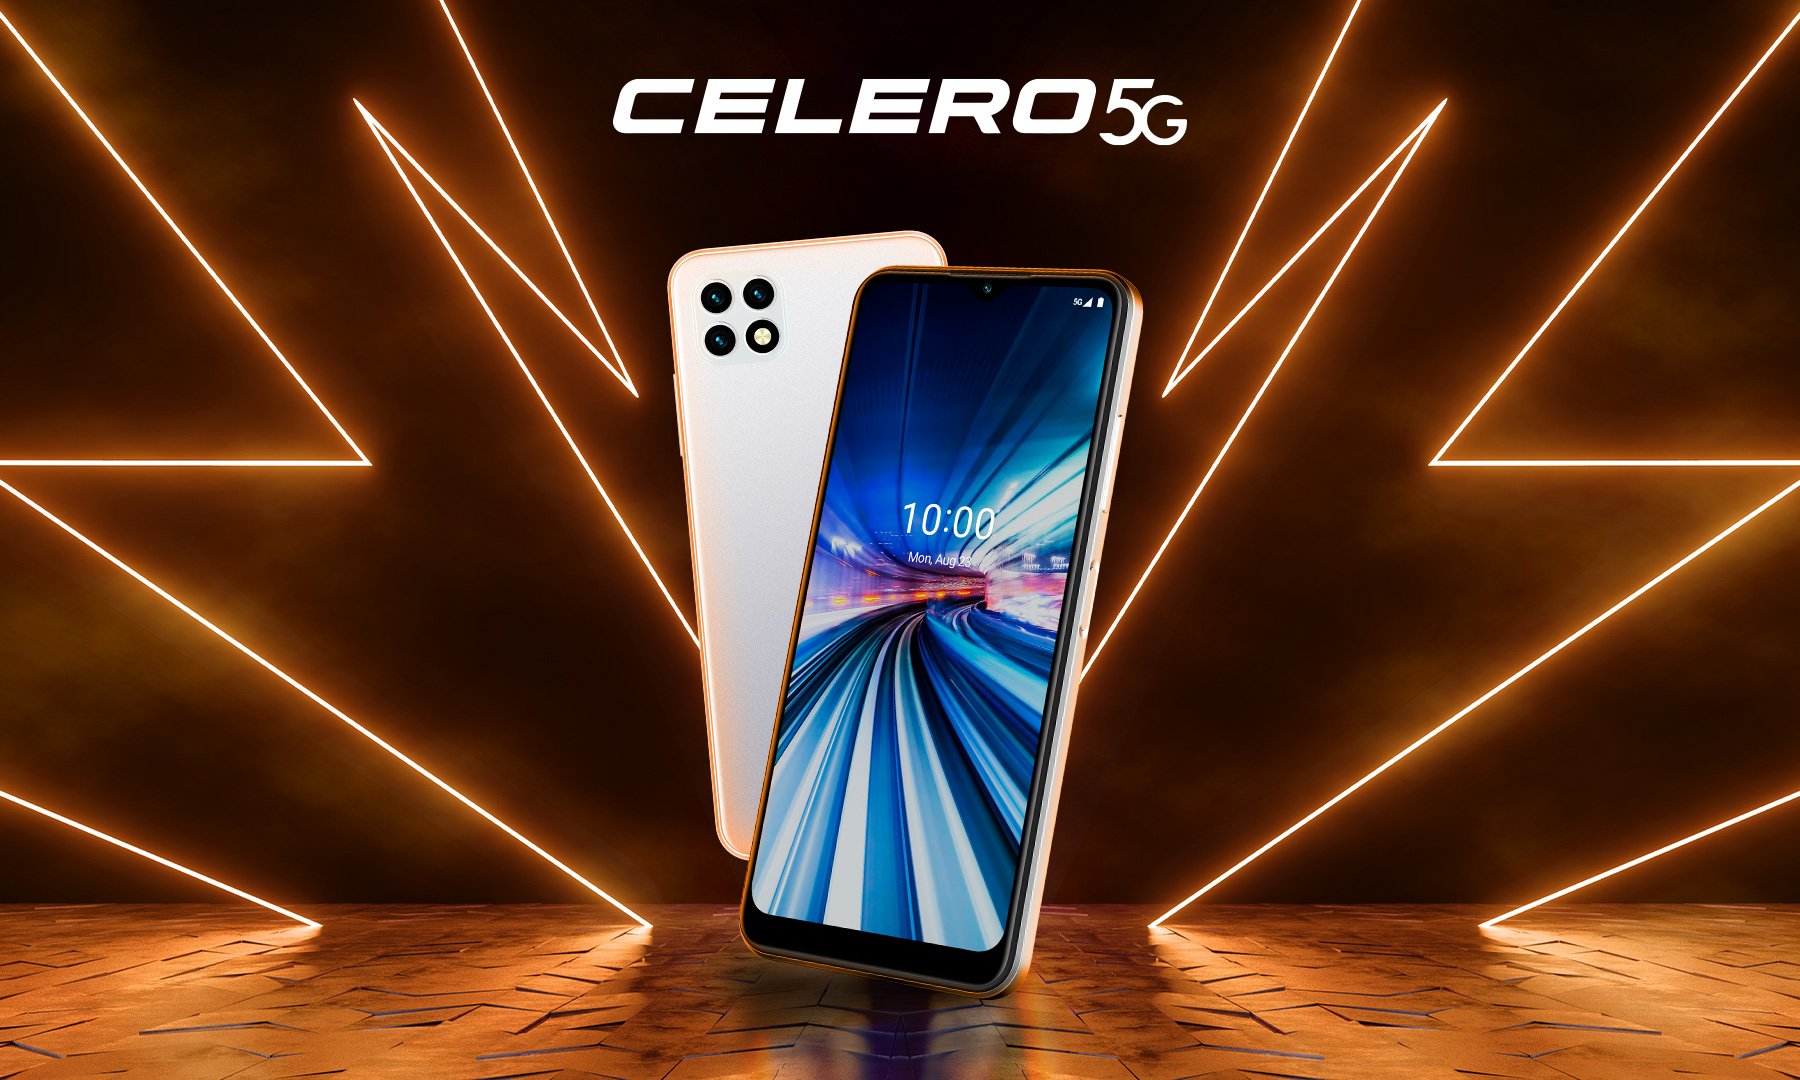 Smartphone Celero5g